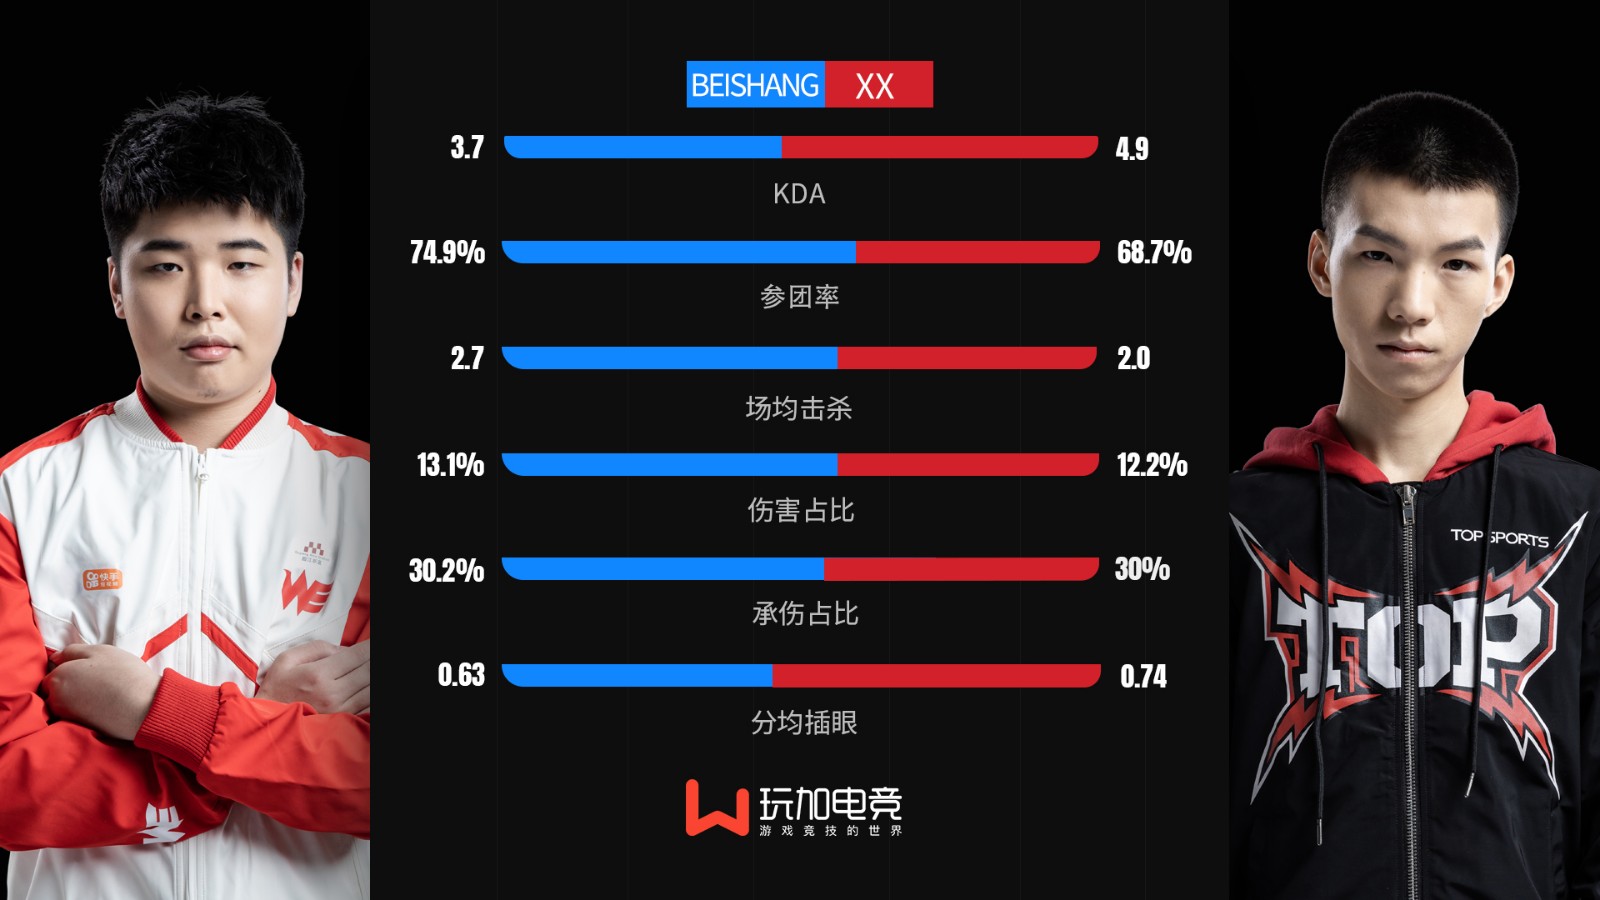 [选手数据对比] Xx vs beishang 谁能掌握赛场节奏